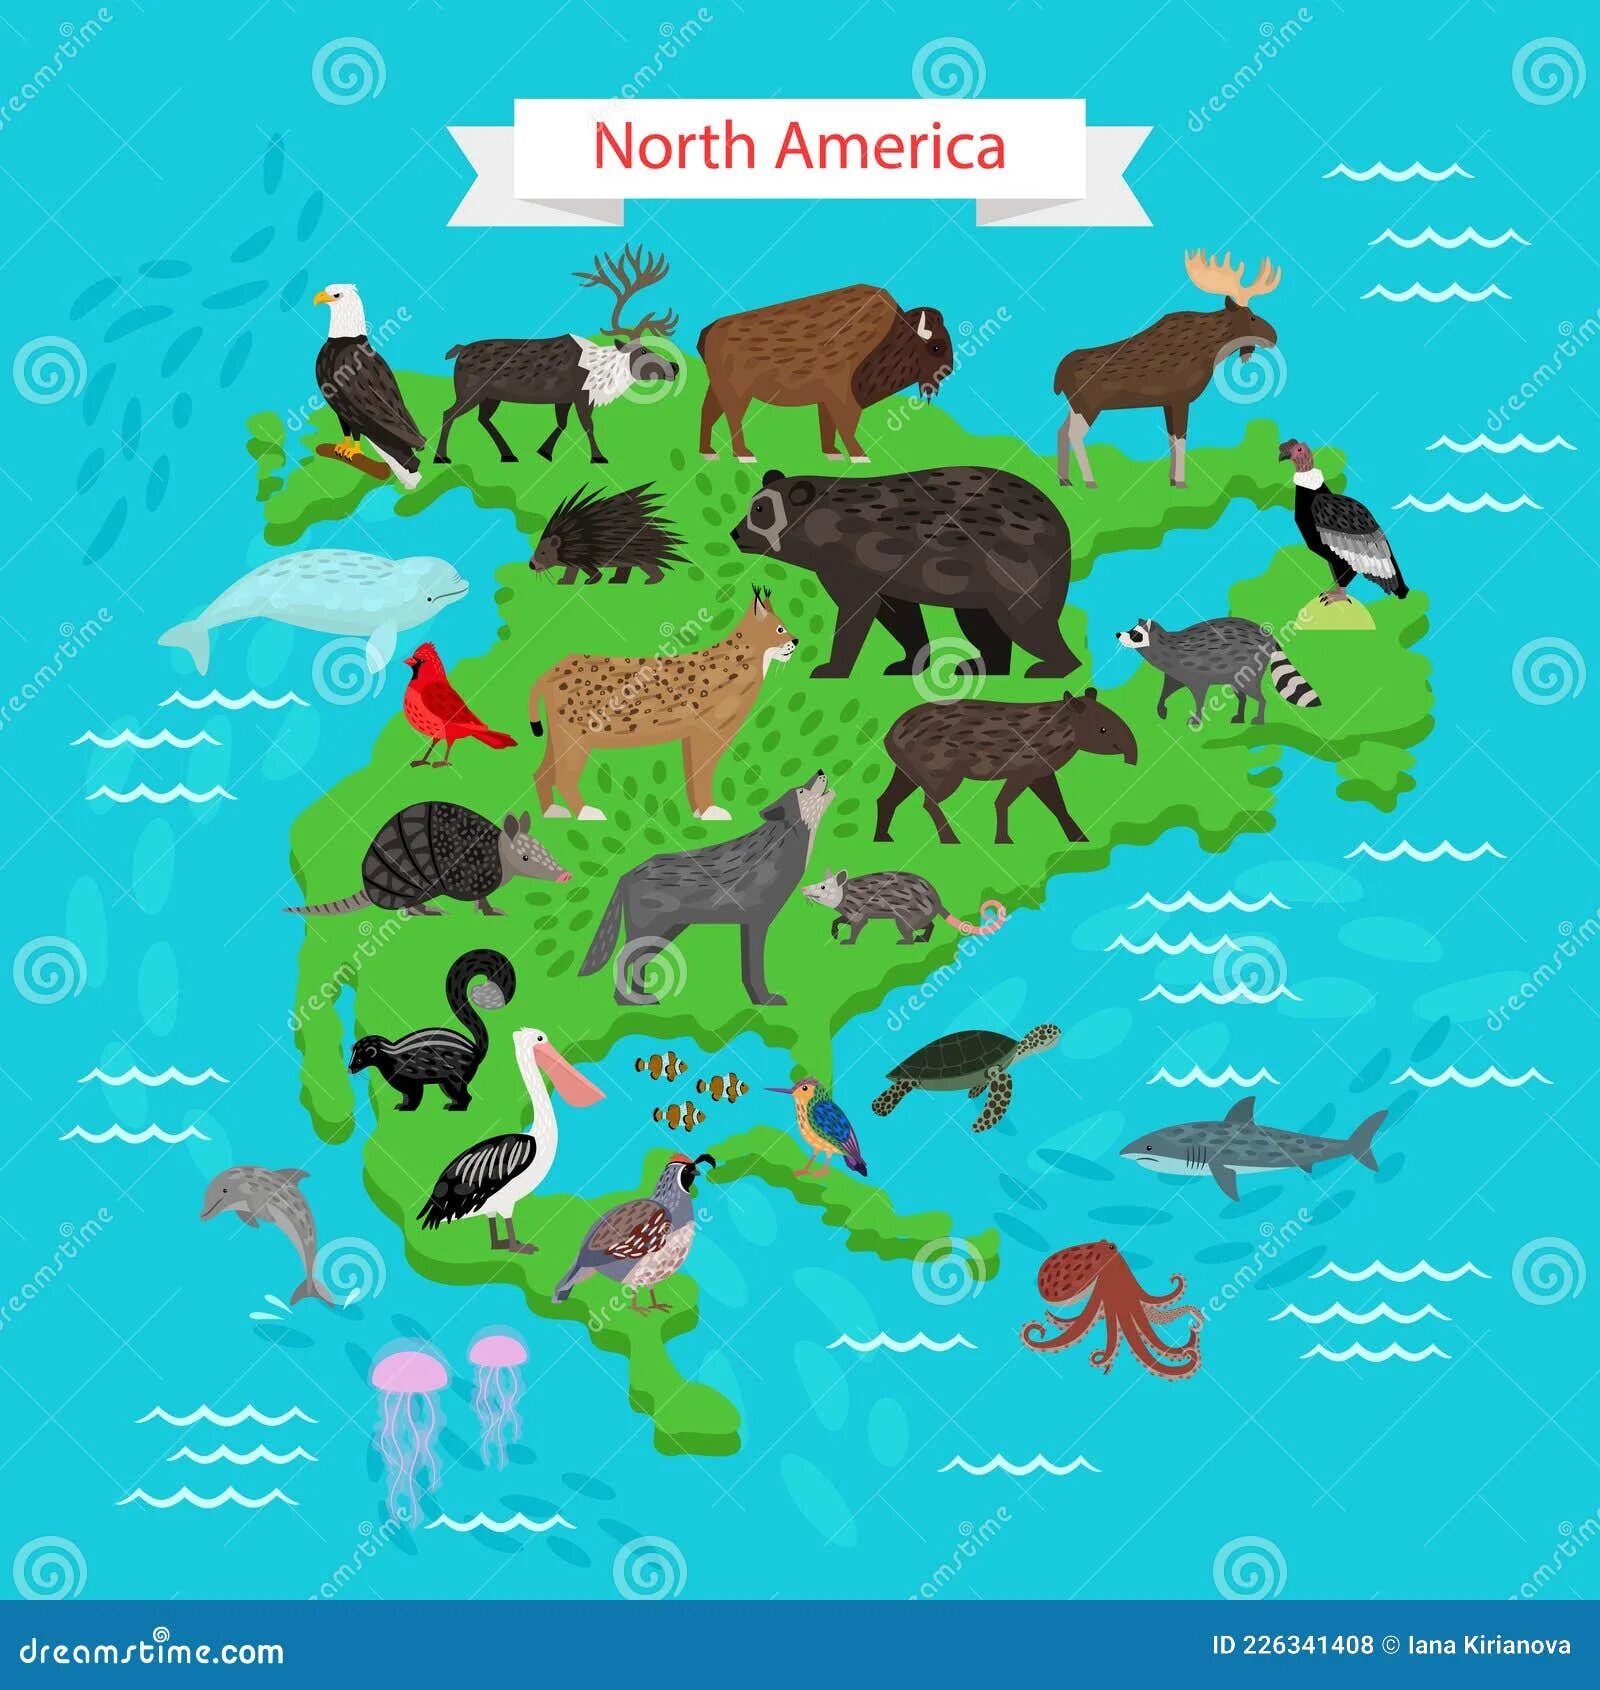 Карта Северной Америки с животными. Северная Америка для детей с животными. Животный мир Северной Америки на карте. Карта животных и растений Северной Америки. Животный мир материка северная америка